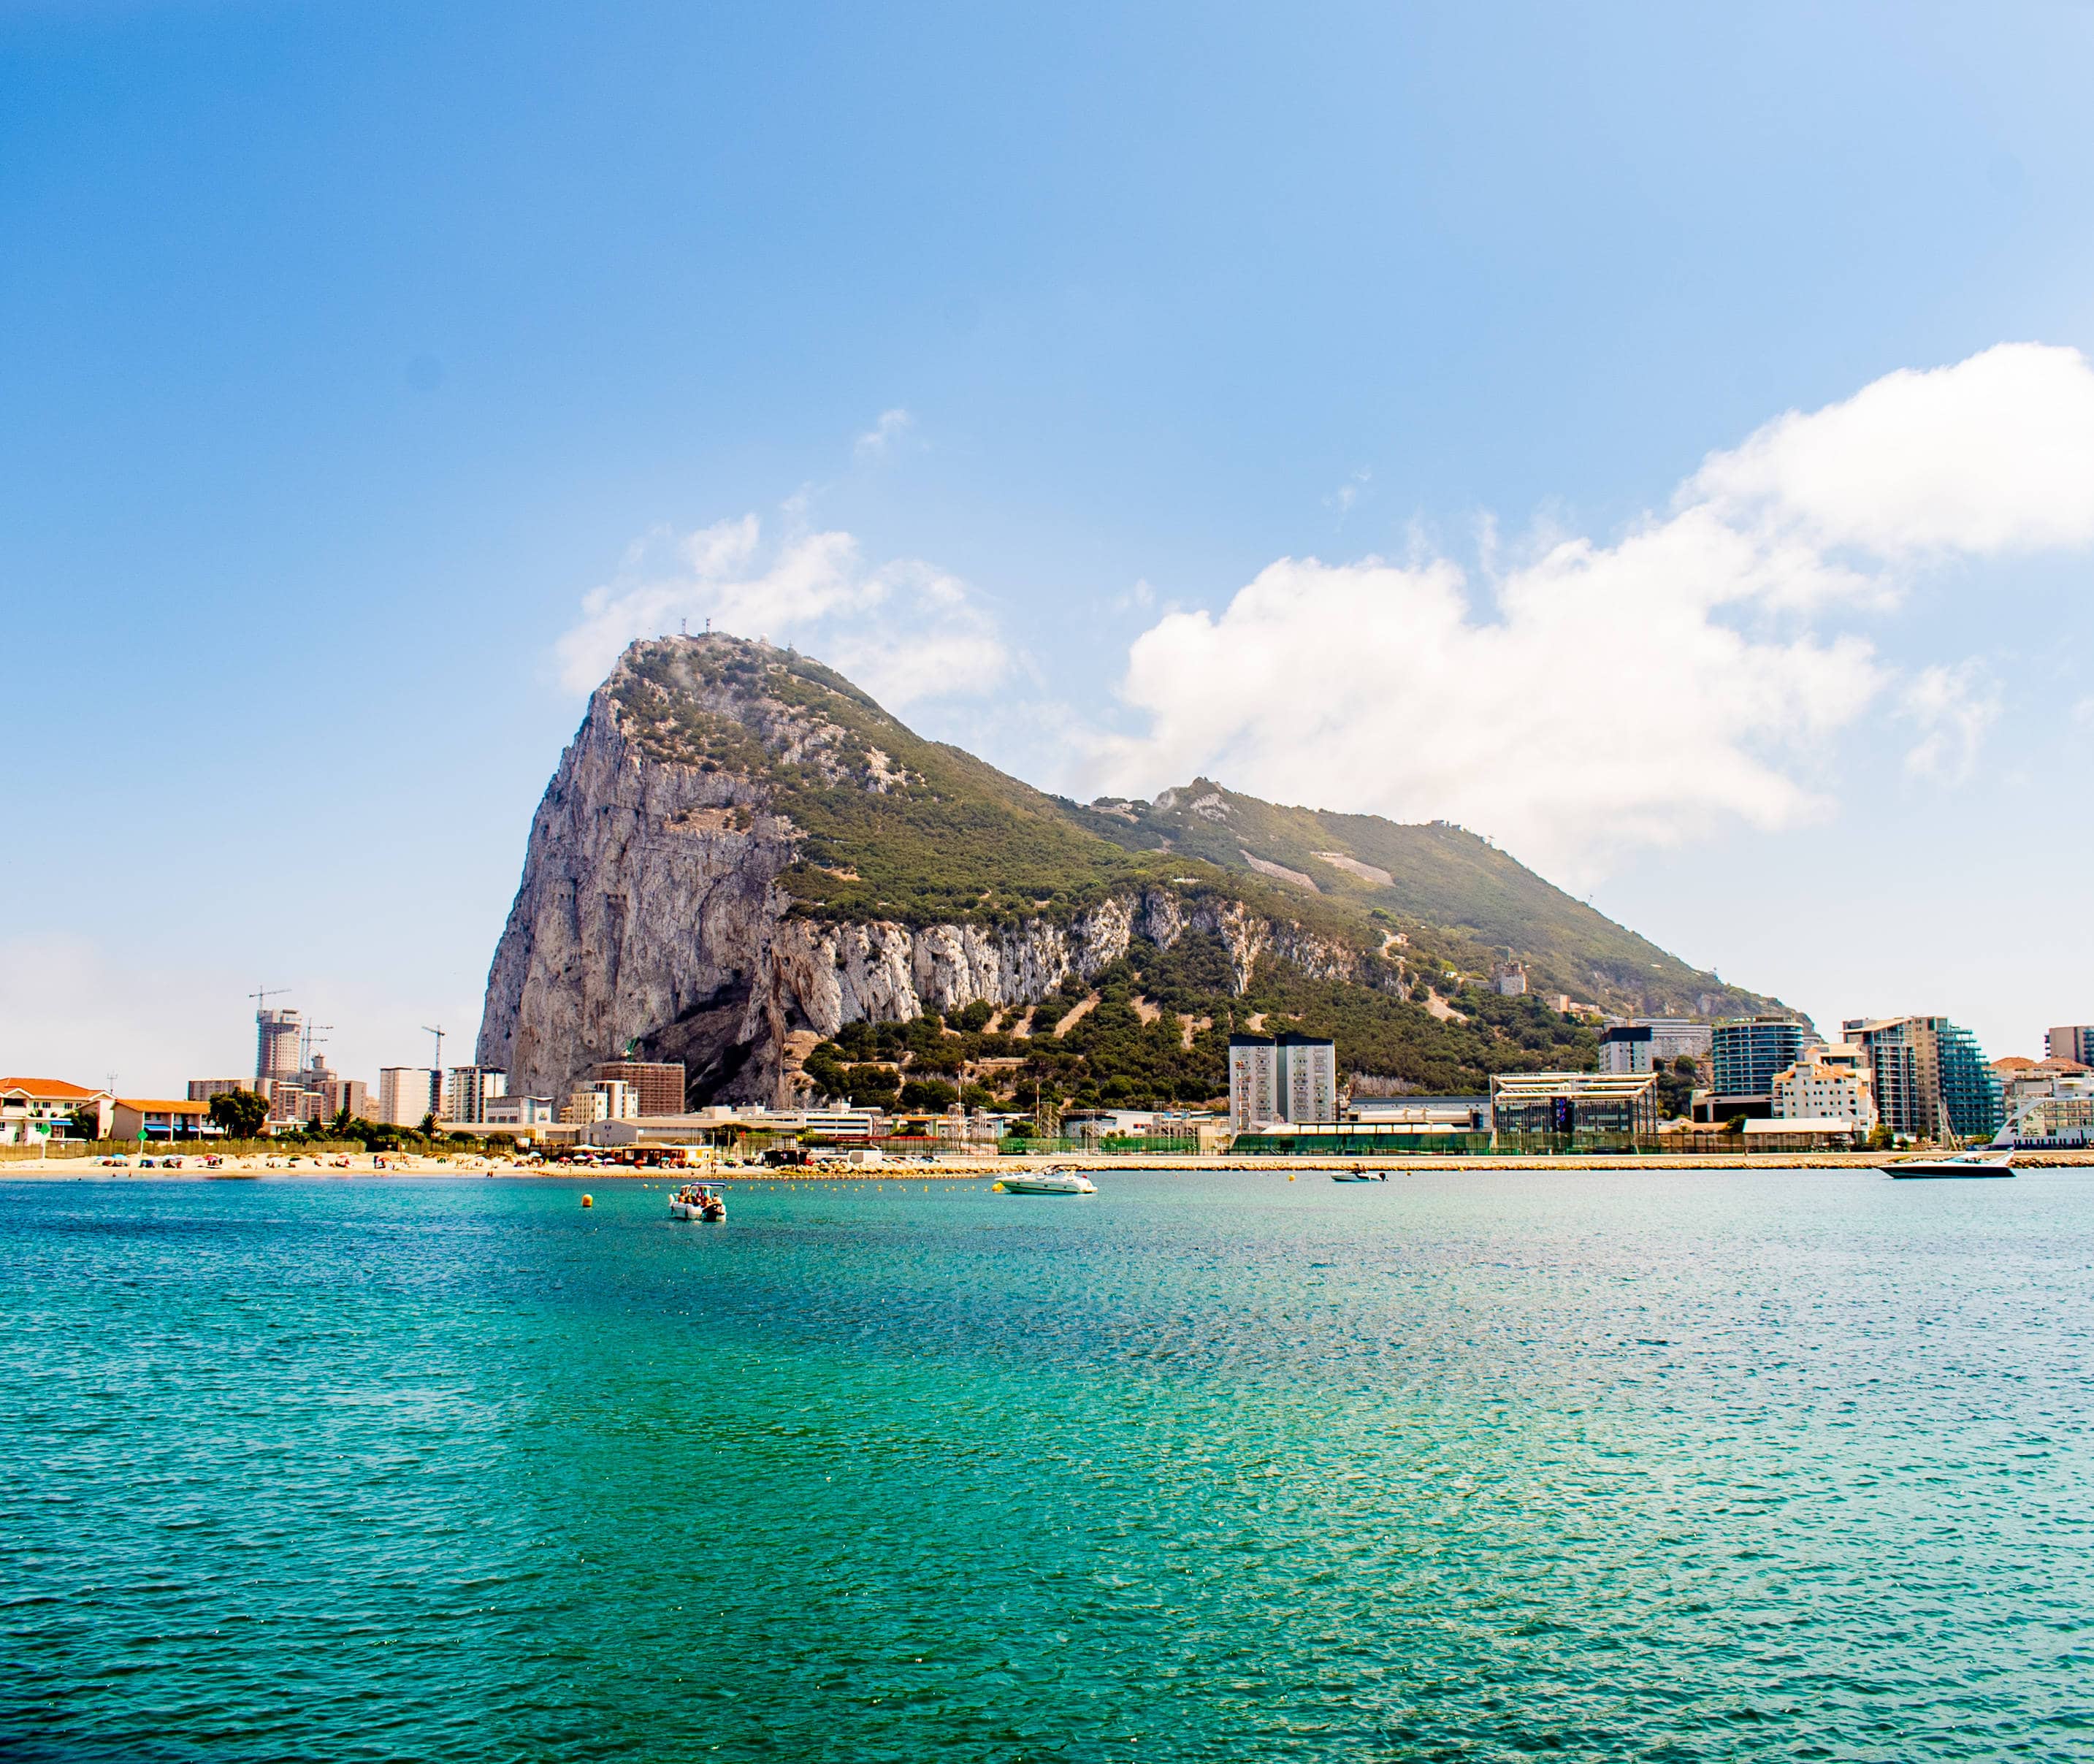 Gibraltar, un territoire d'outre-mer et un promontoire du Royaume-Uni, sur la côte sud de l'Espagne, connu pour son célèbre rocher.
Crédits: DPPA/Sipa